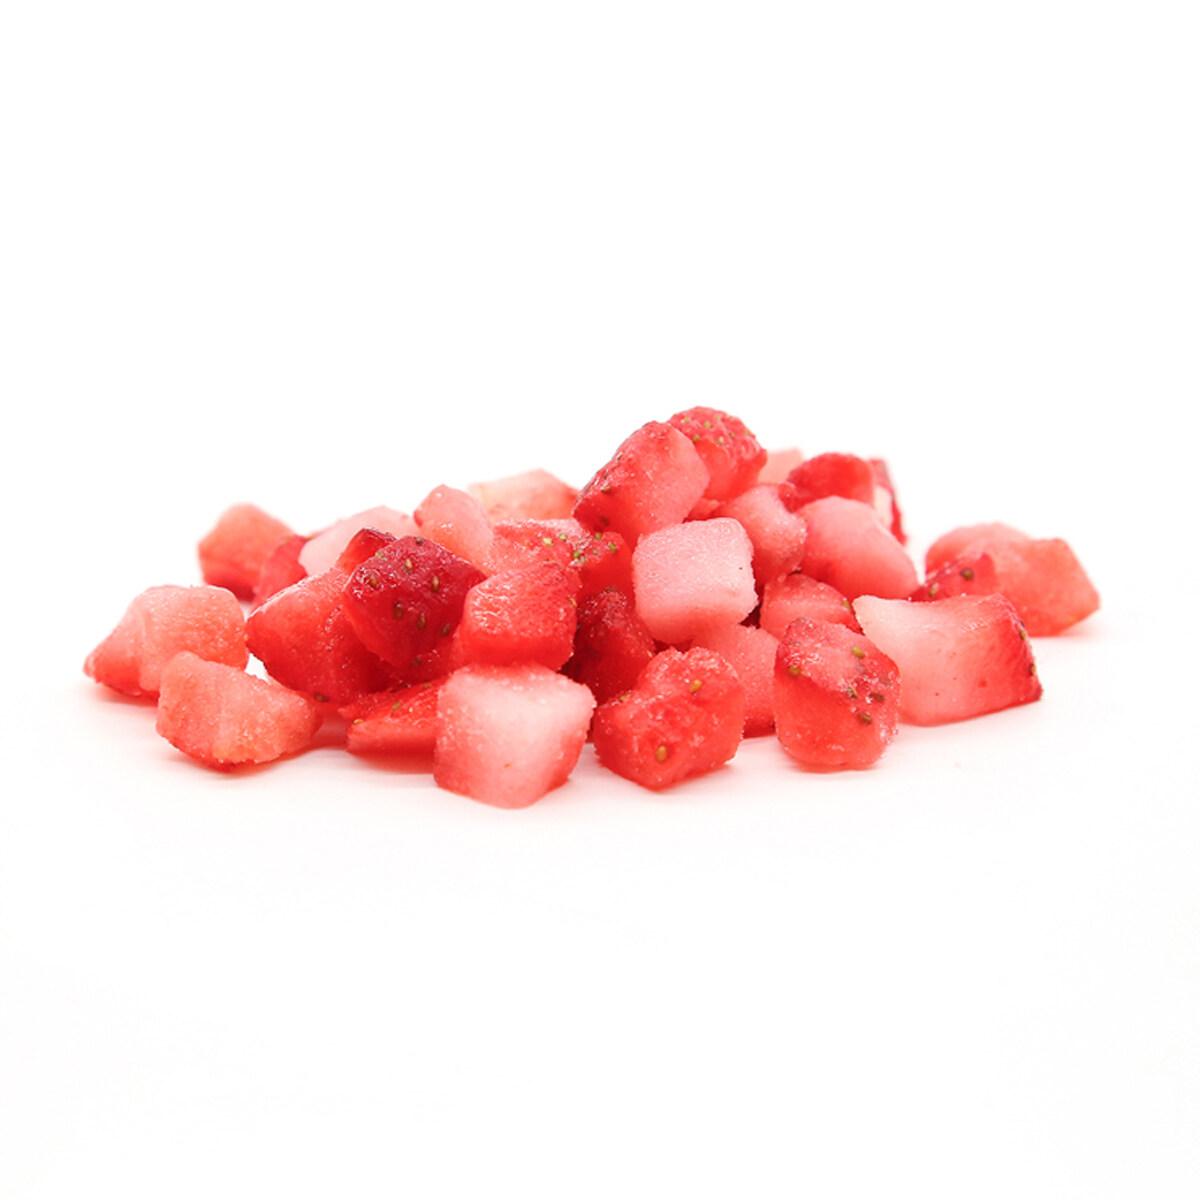 Wholesale frozen leek strawberry, sliced frozen strawberries OEM, frozen whole strawberry, High Quality frozen strawberri, frozen strawberry dices ODM